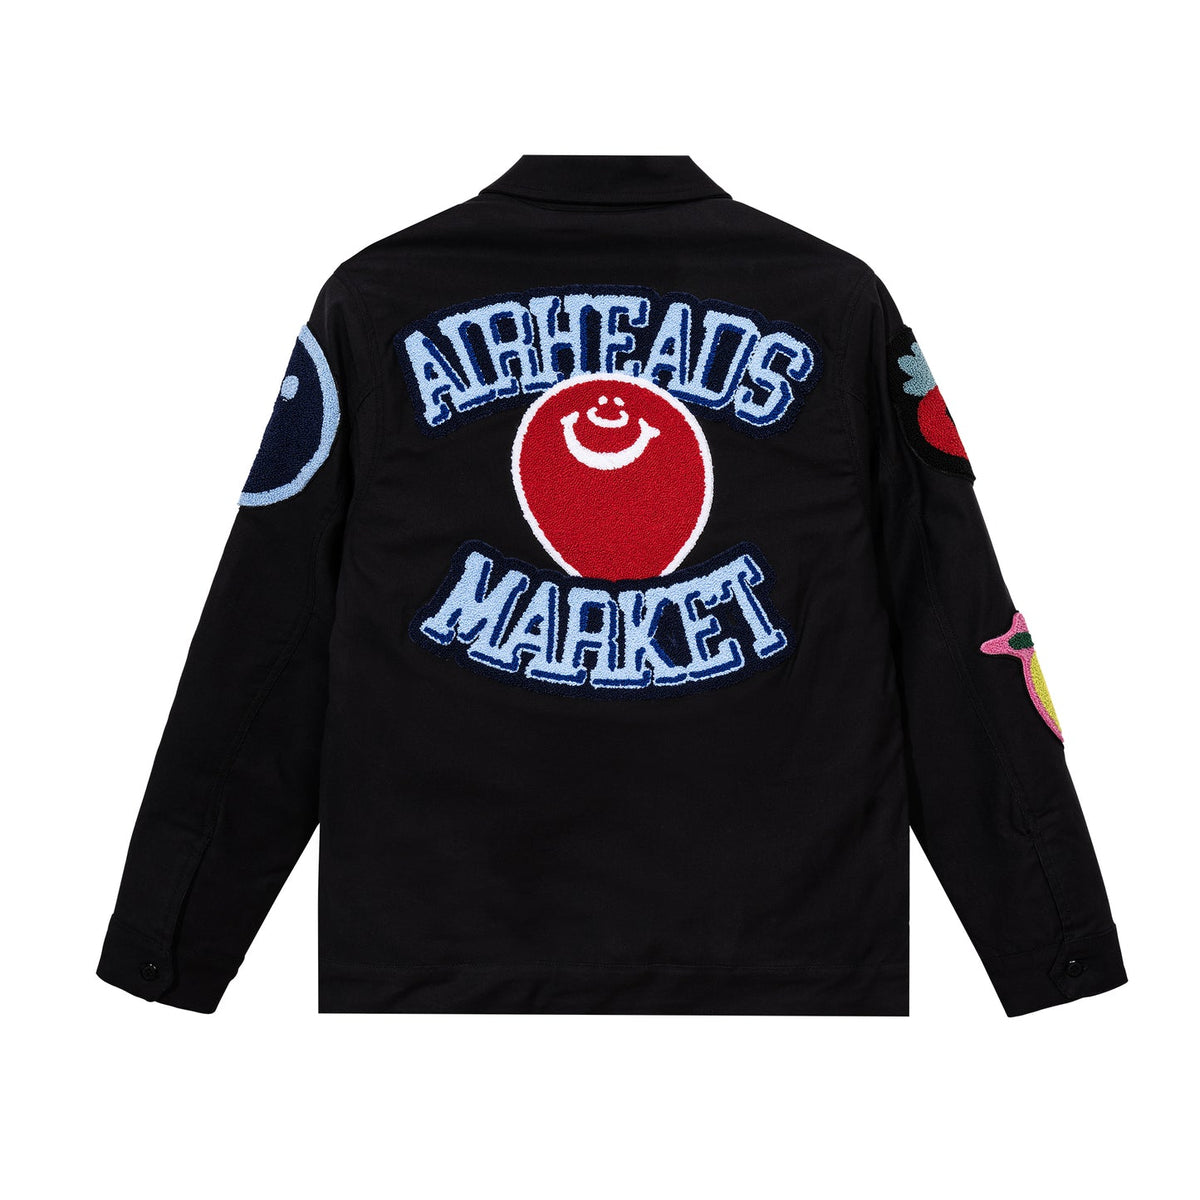 Market x Airheads Flavor Blasted Chenille Patch Garage Jacket "Black"